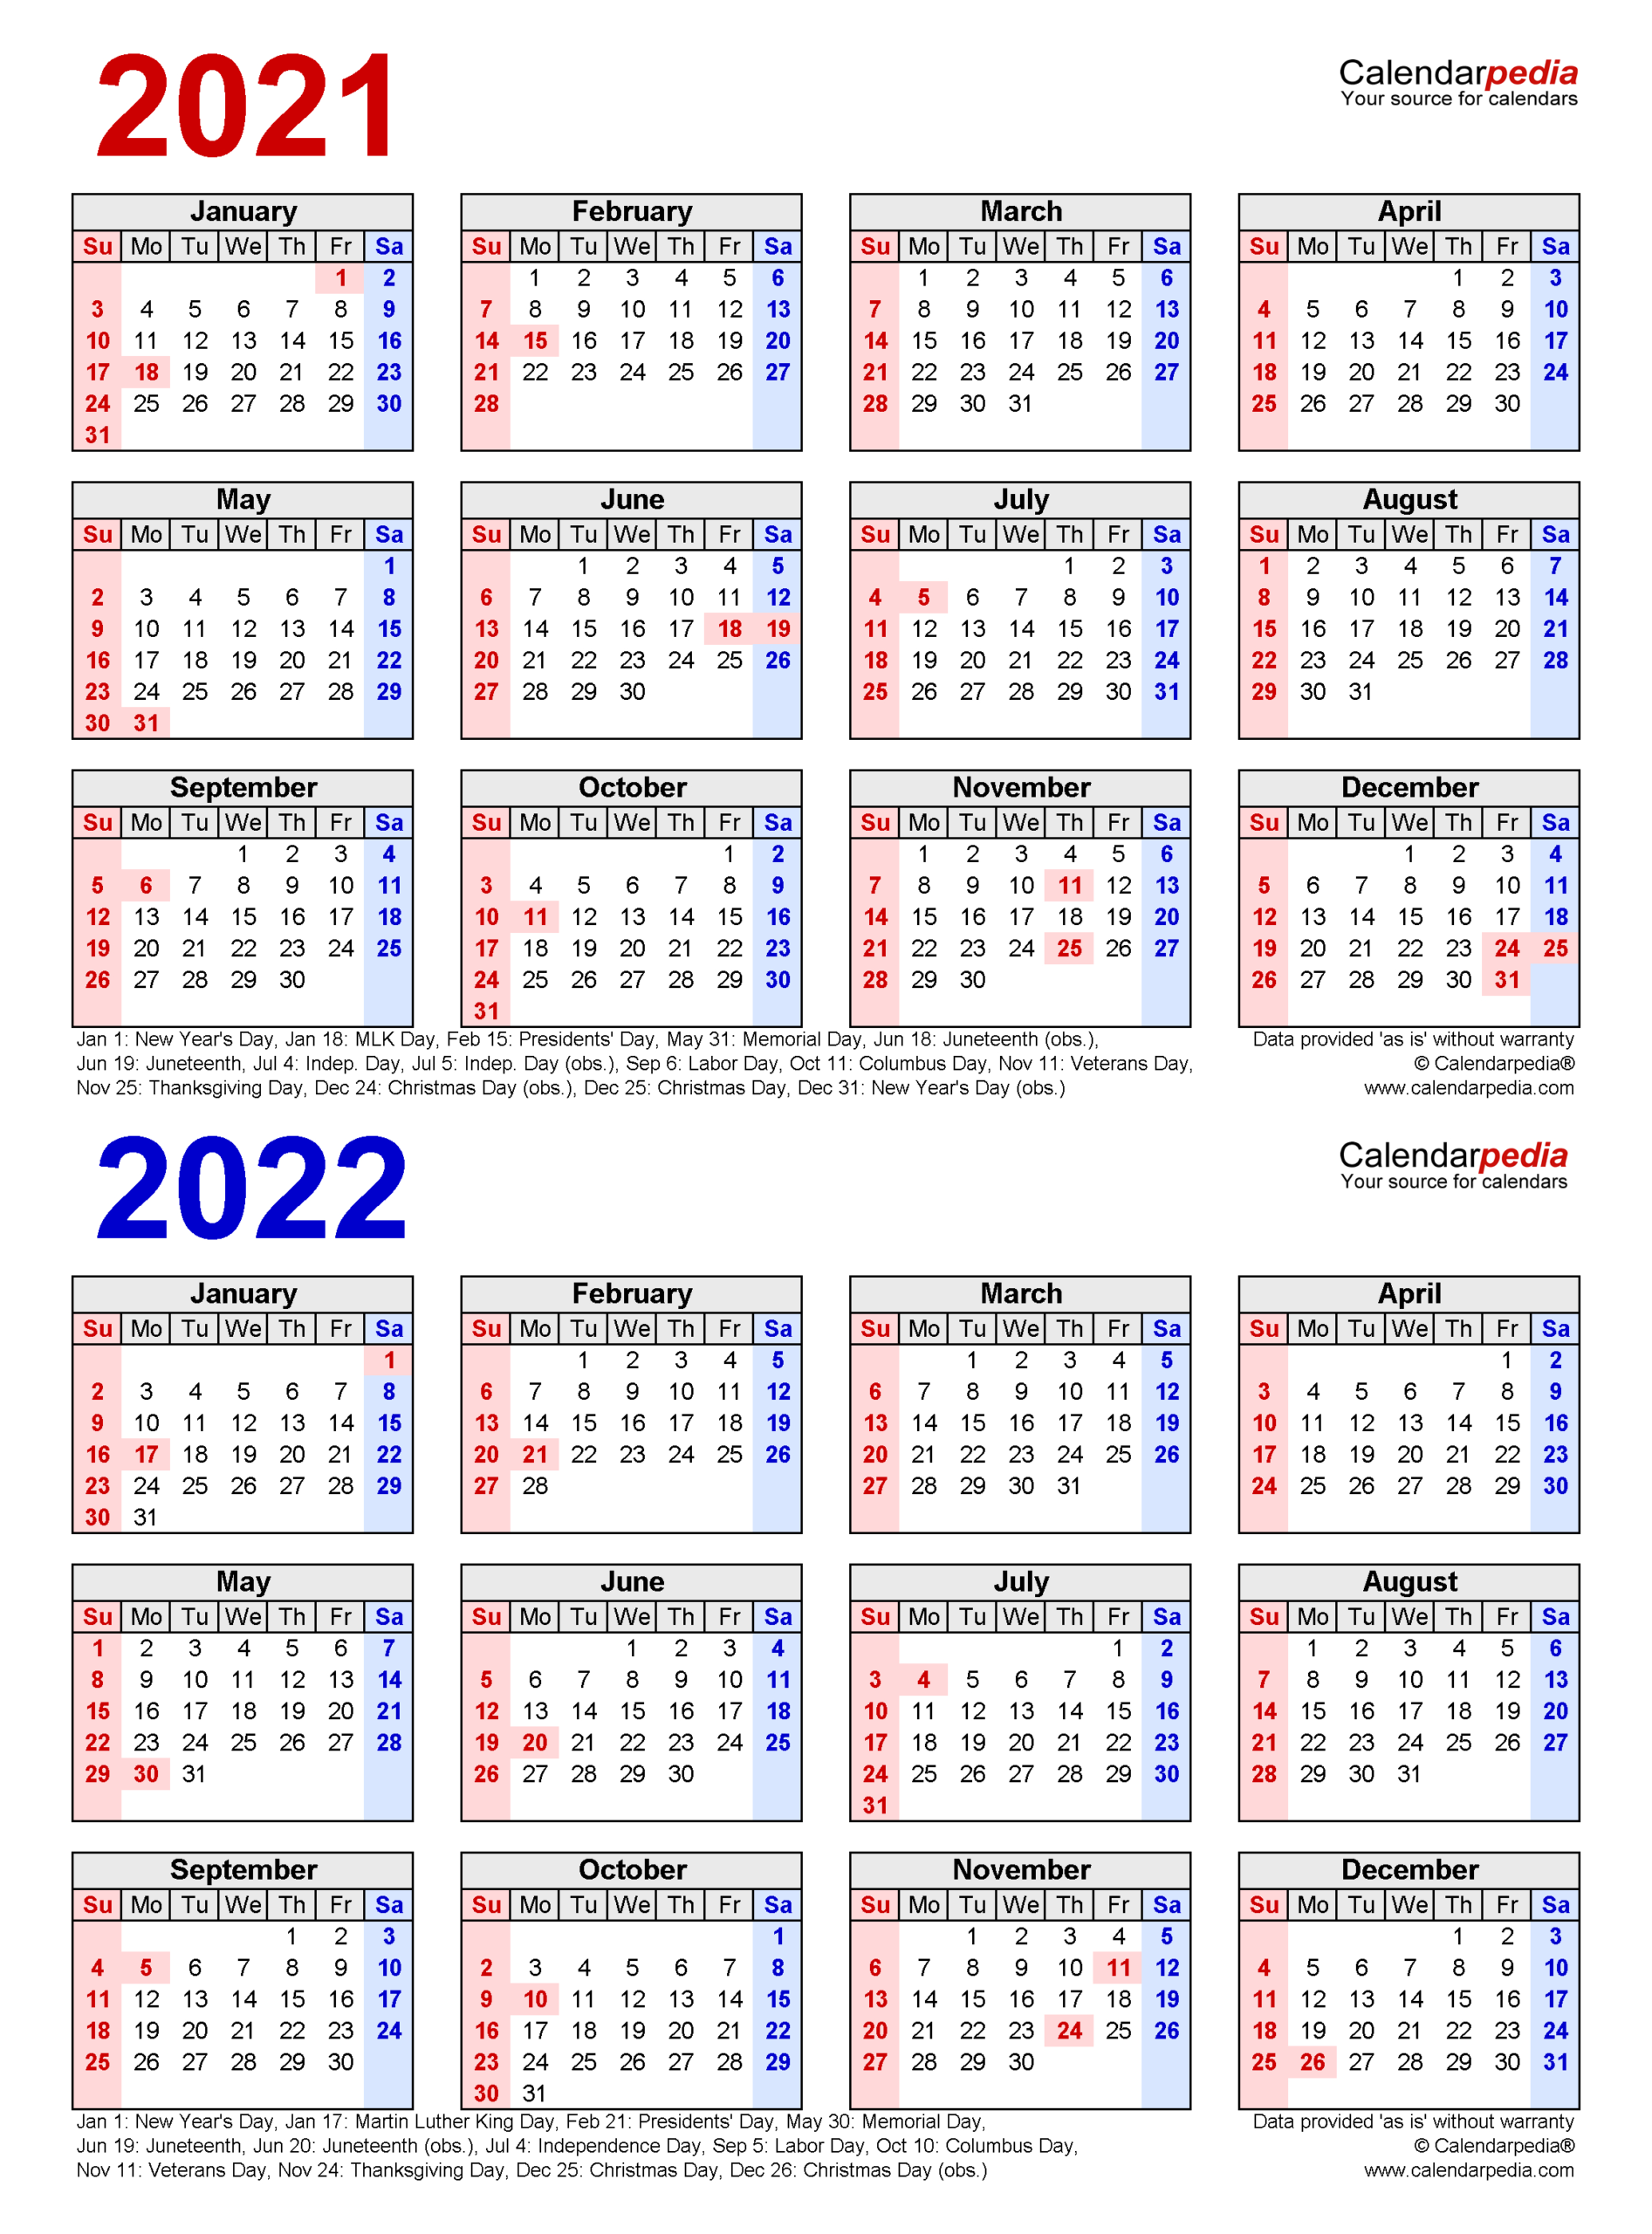 New Bcc Spring 2022 Calendar Images - Custom Desk Calendar 2022-2022 Calendar Victoria With School Holidays